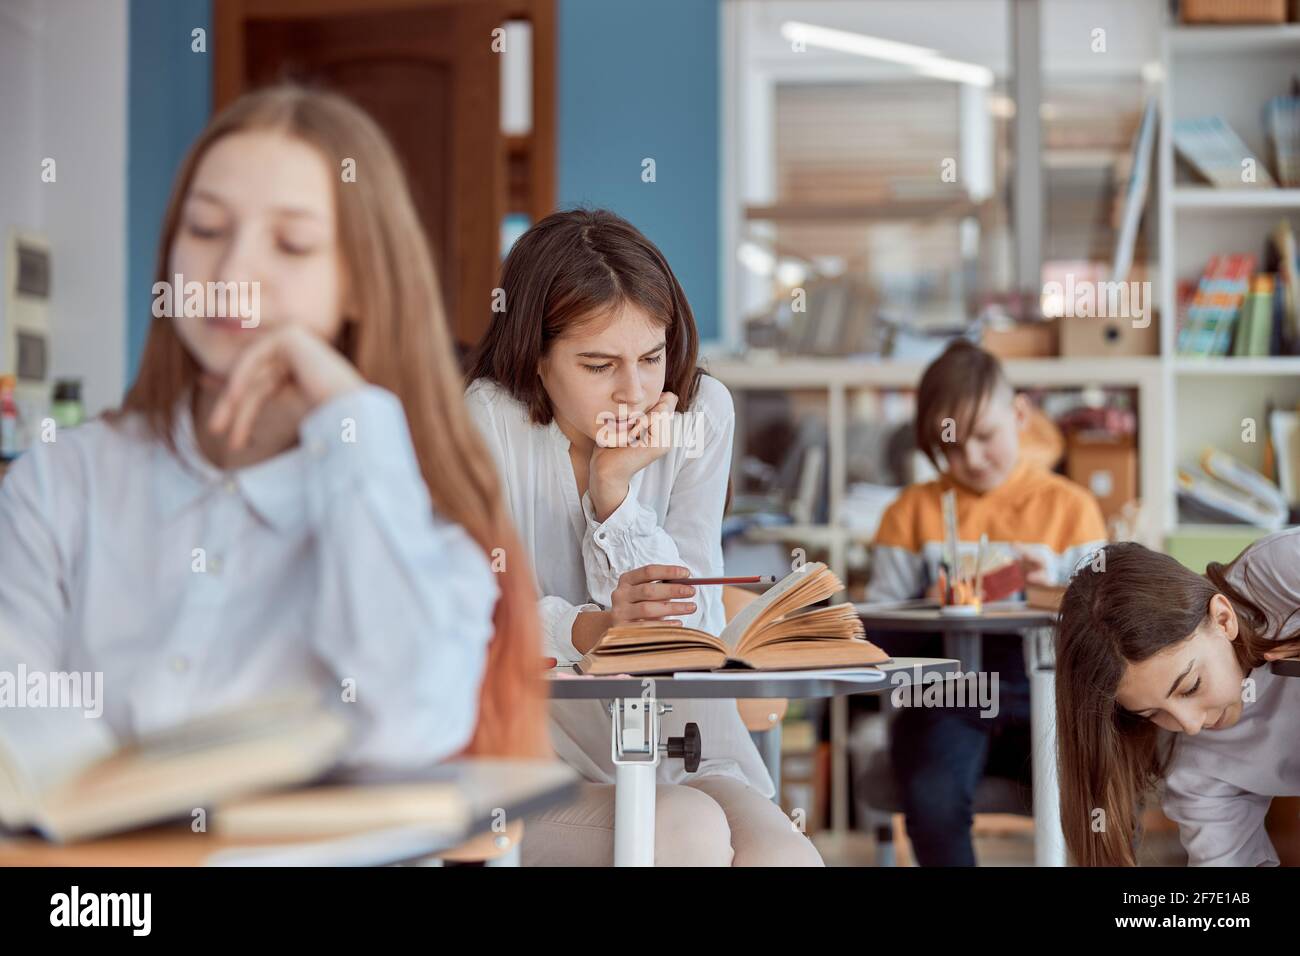 Junges Mädchen sieht abwesend im Lesen. Grundschüler sitzen auf Schreibtischen und lesen im Klassenzimmer Bücher Stockfoto